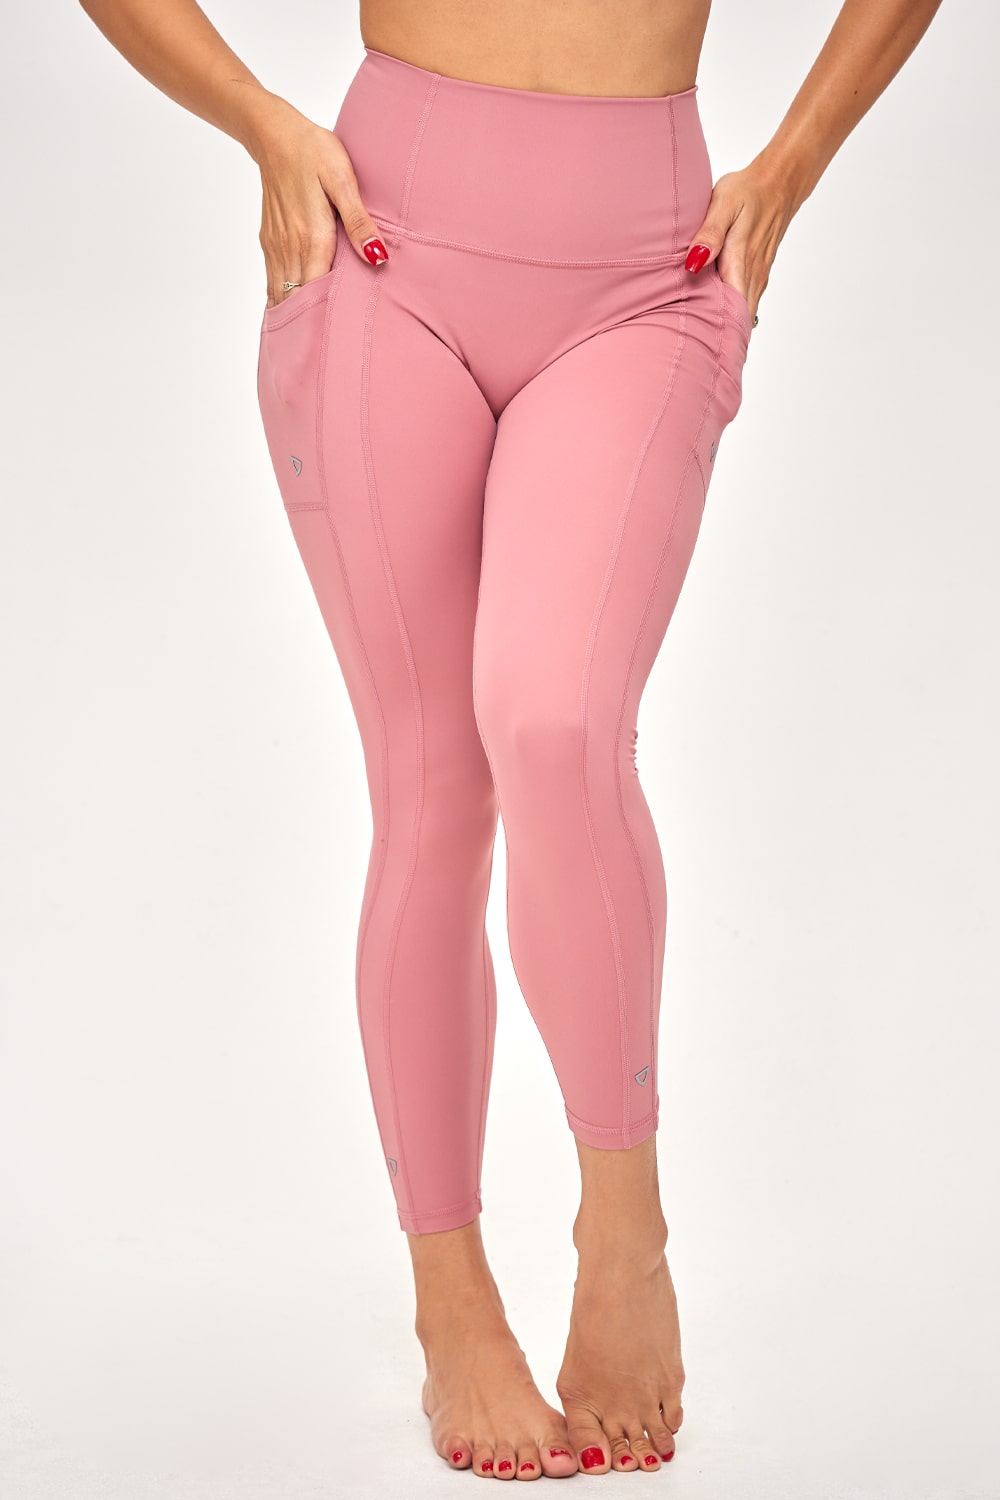 Ashana Leggings - Blossom Pink